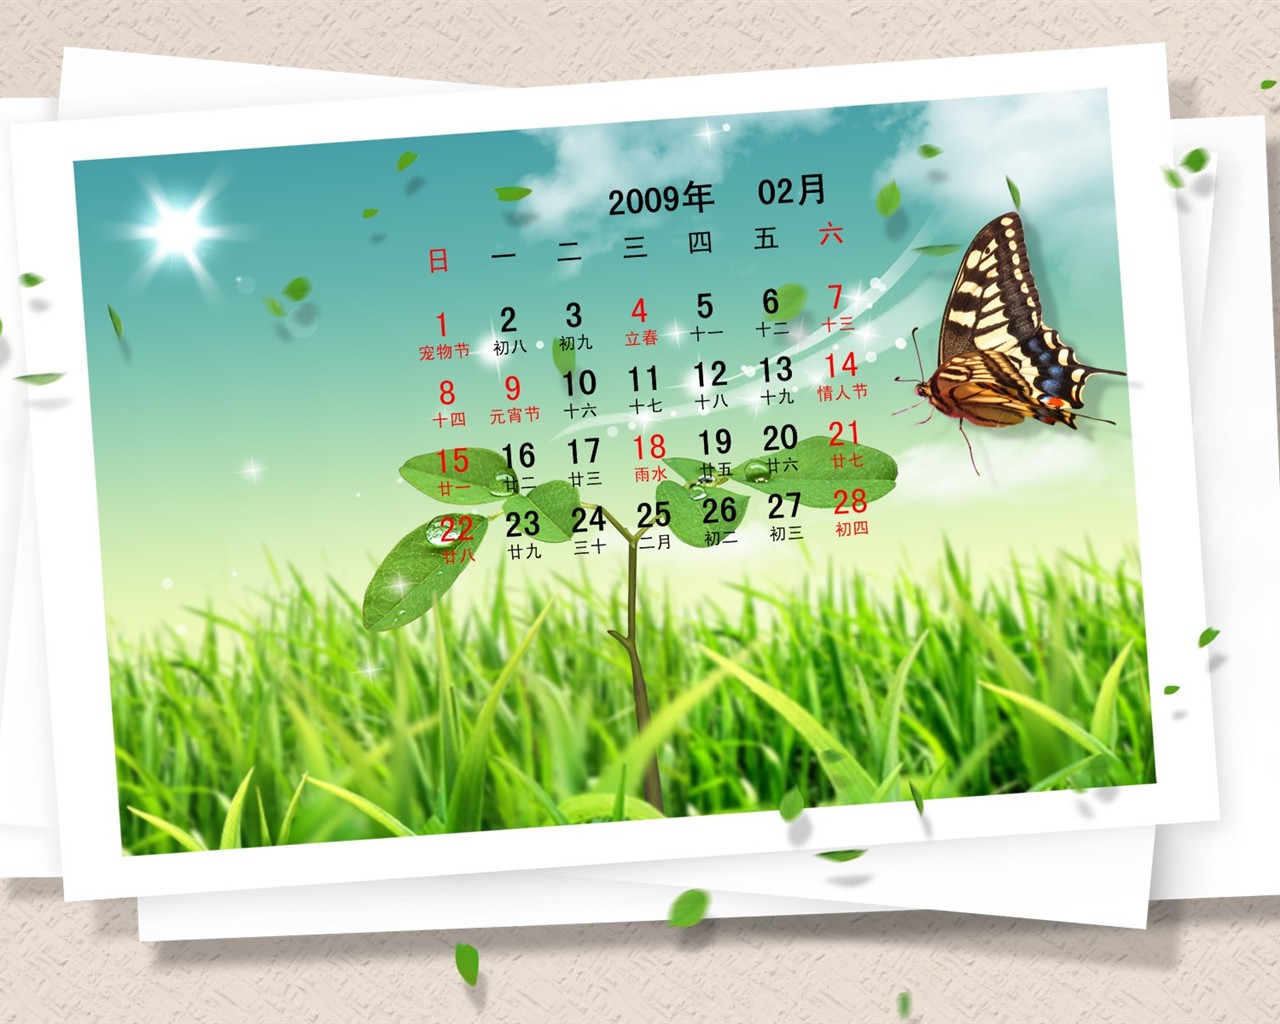 PaperArt 09 años en el fondo de pantalla de calendario febrero #29 - 1280x1024